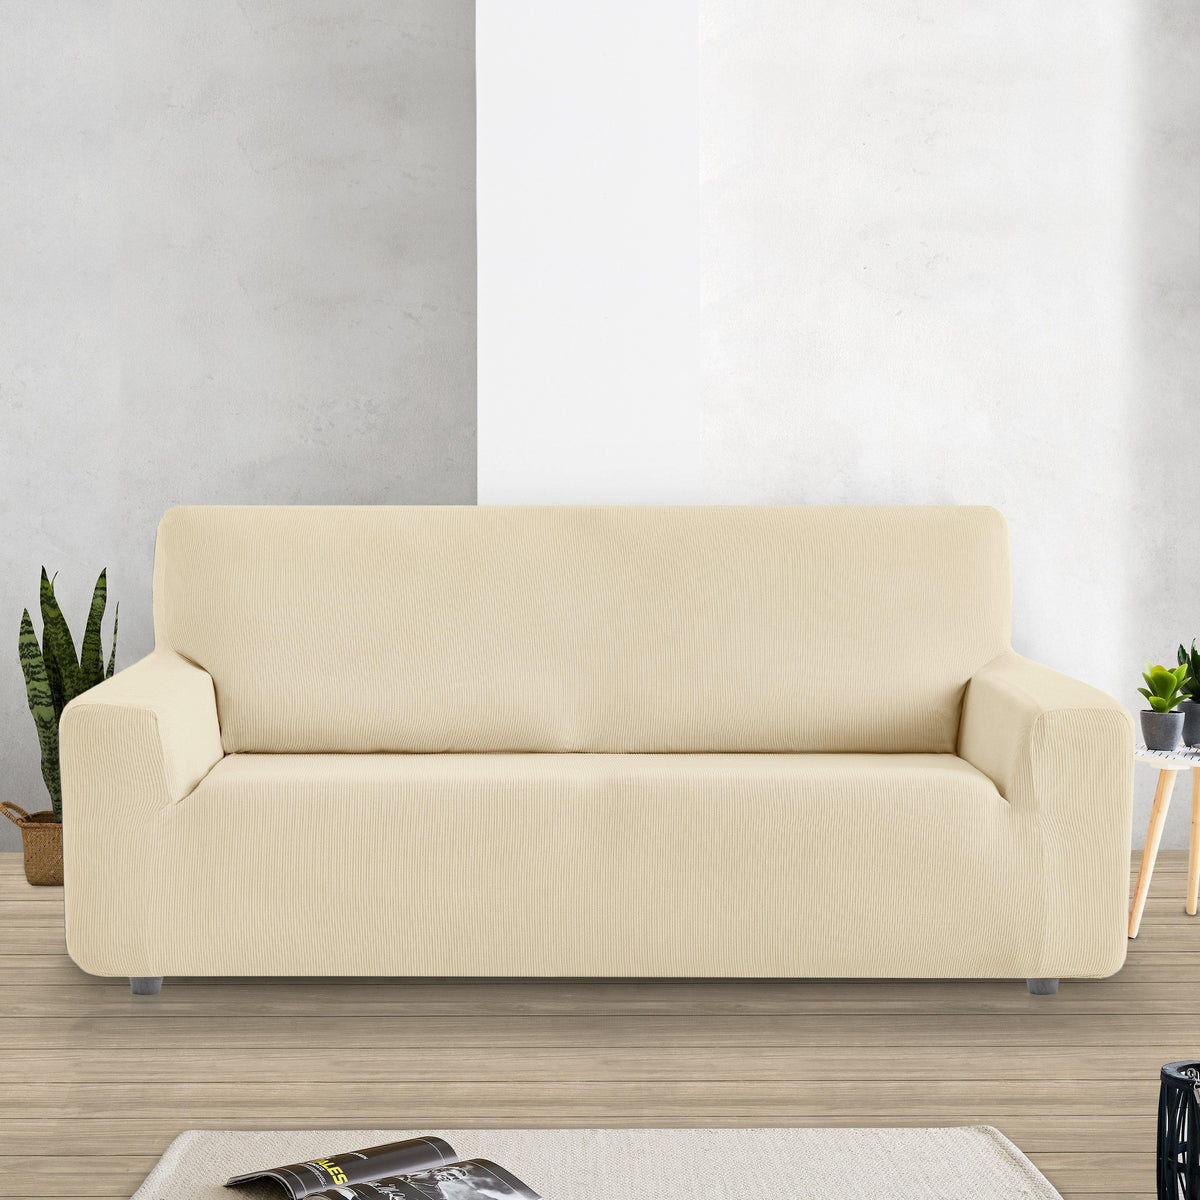 Fundas de sofá, elásticas, ajustables o multiusos, para que tu